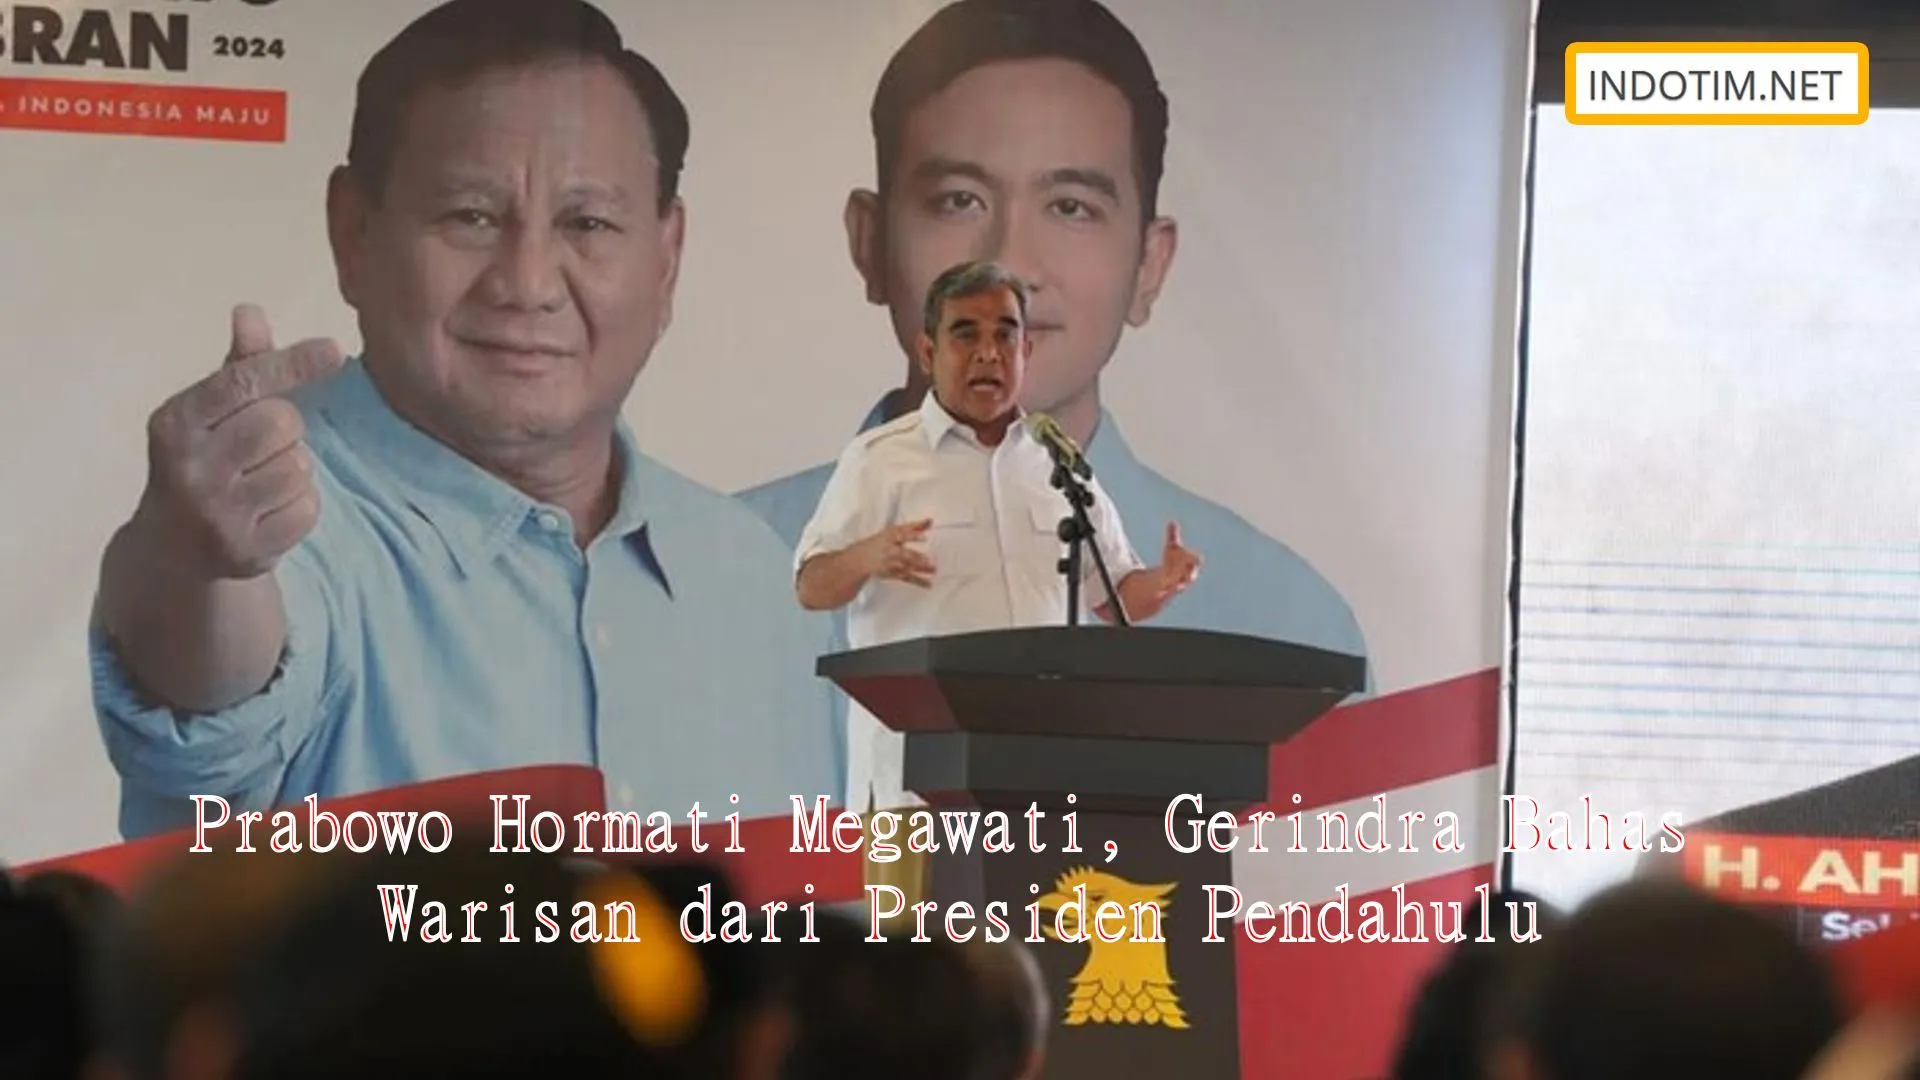 Prabowo Hormati Megawati, Gerindra Bahas Warisan dari Presiden Pendahulu